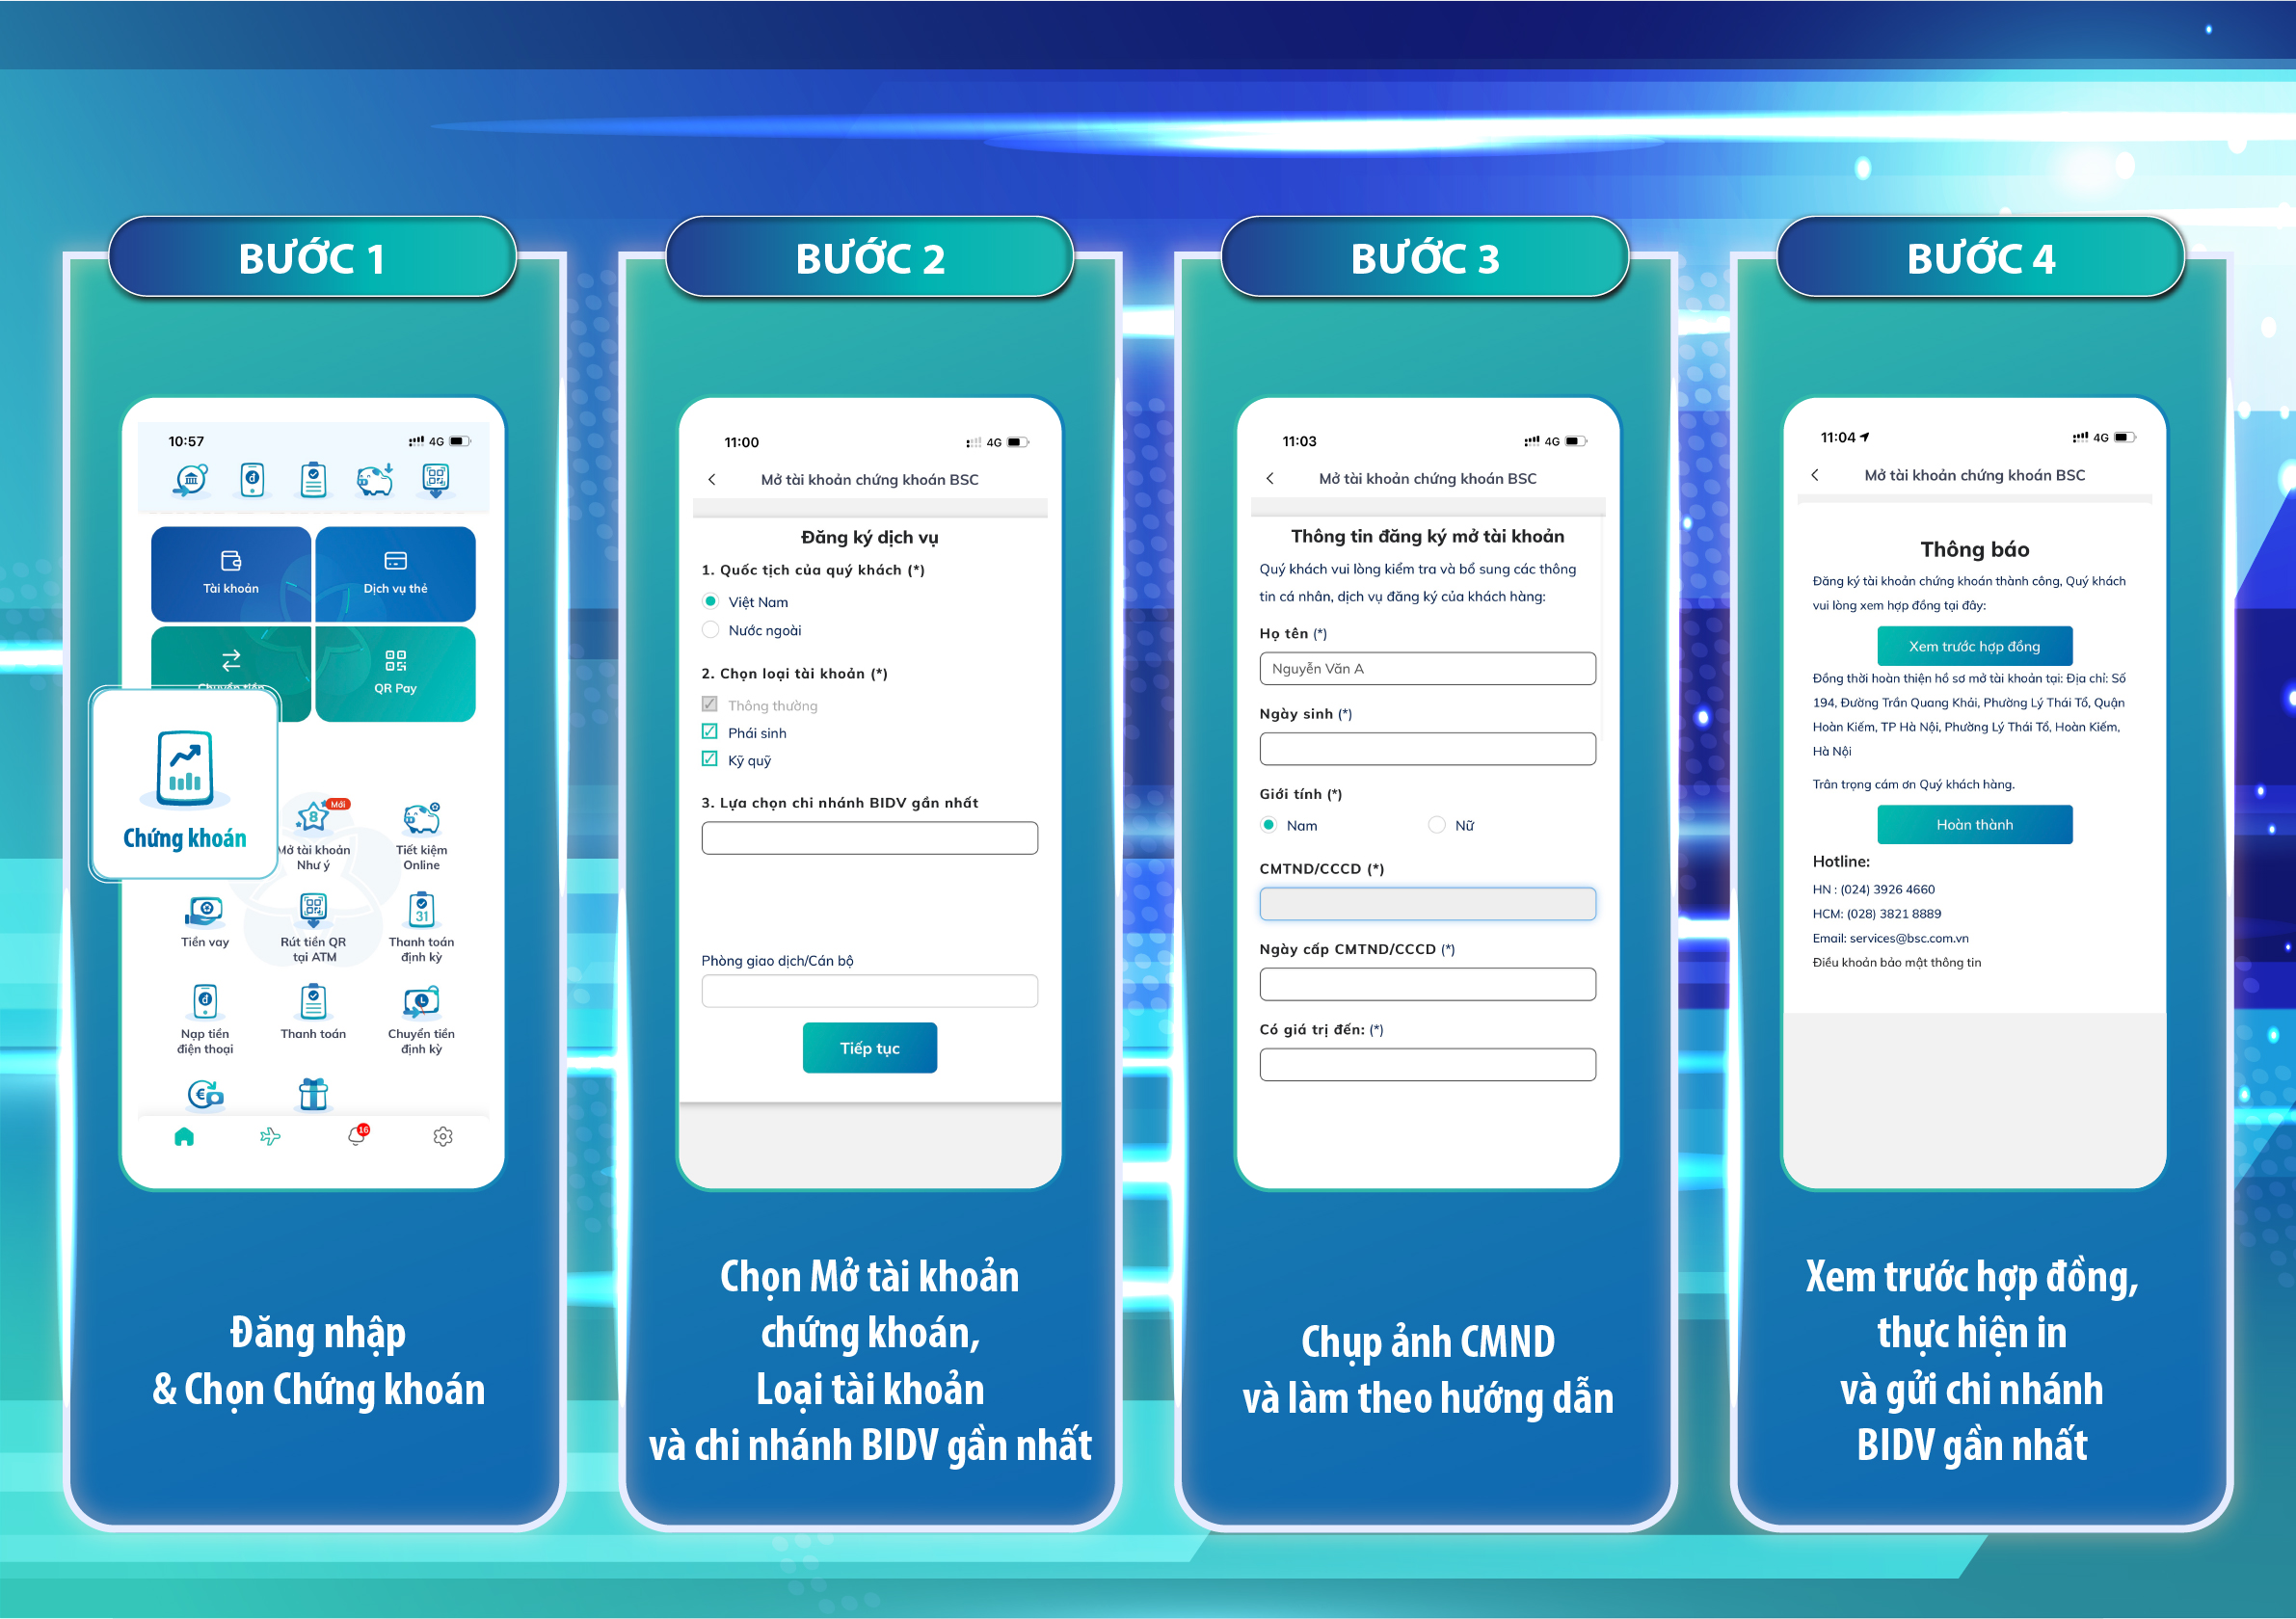 BIDV SmartBanking ra mắt tính năng mới cực kì đơn giản và hiệu quả, mang đến trải nghiệm tuyệt vời cho người dùng. Hãy khám phá những tính năng mới và độc đáo, giúp cho công việc quản lý tài chính trở nên dễ dàng hơn bao giờ hết.